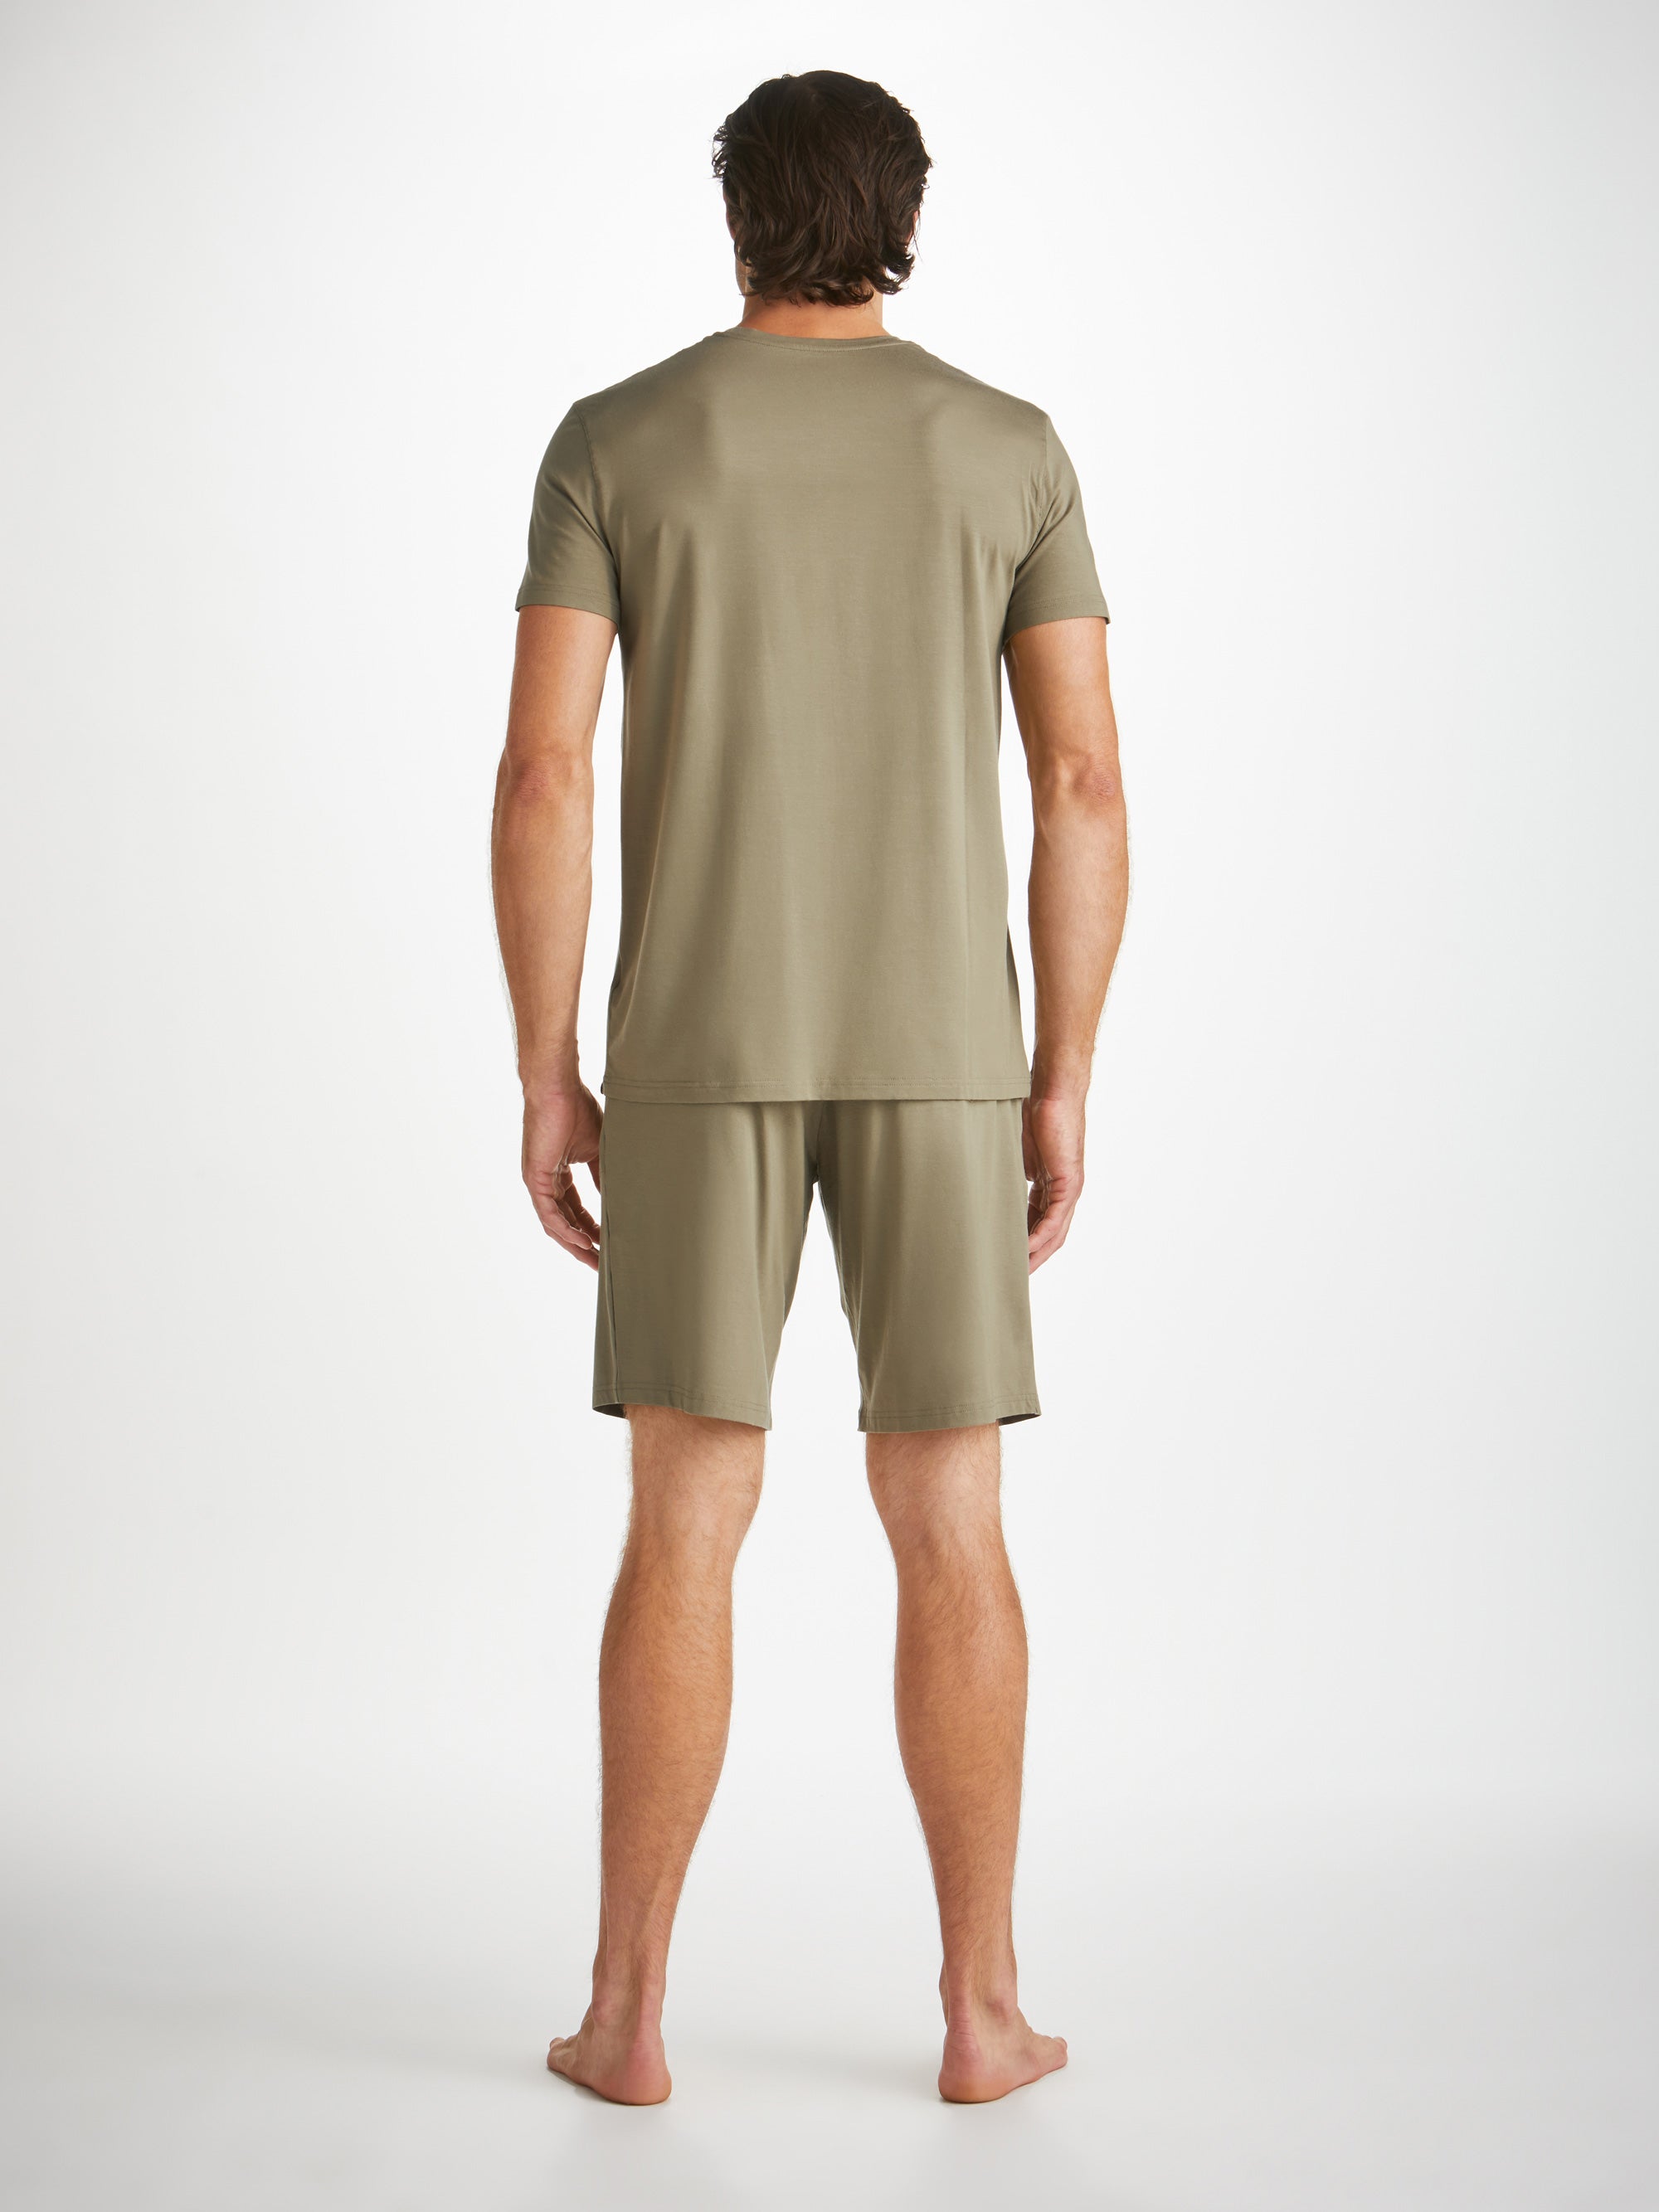 Men's Lounge Shorts Basel Micro Modal Stretch Khaki